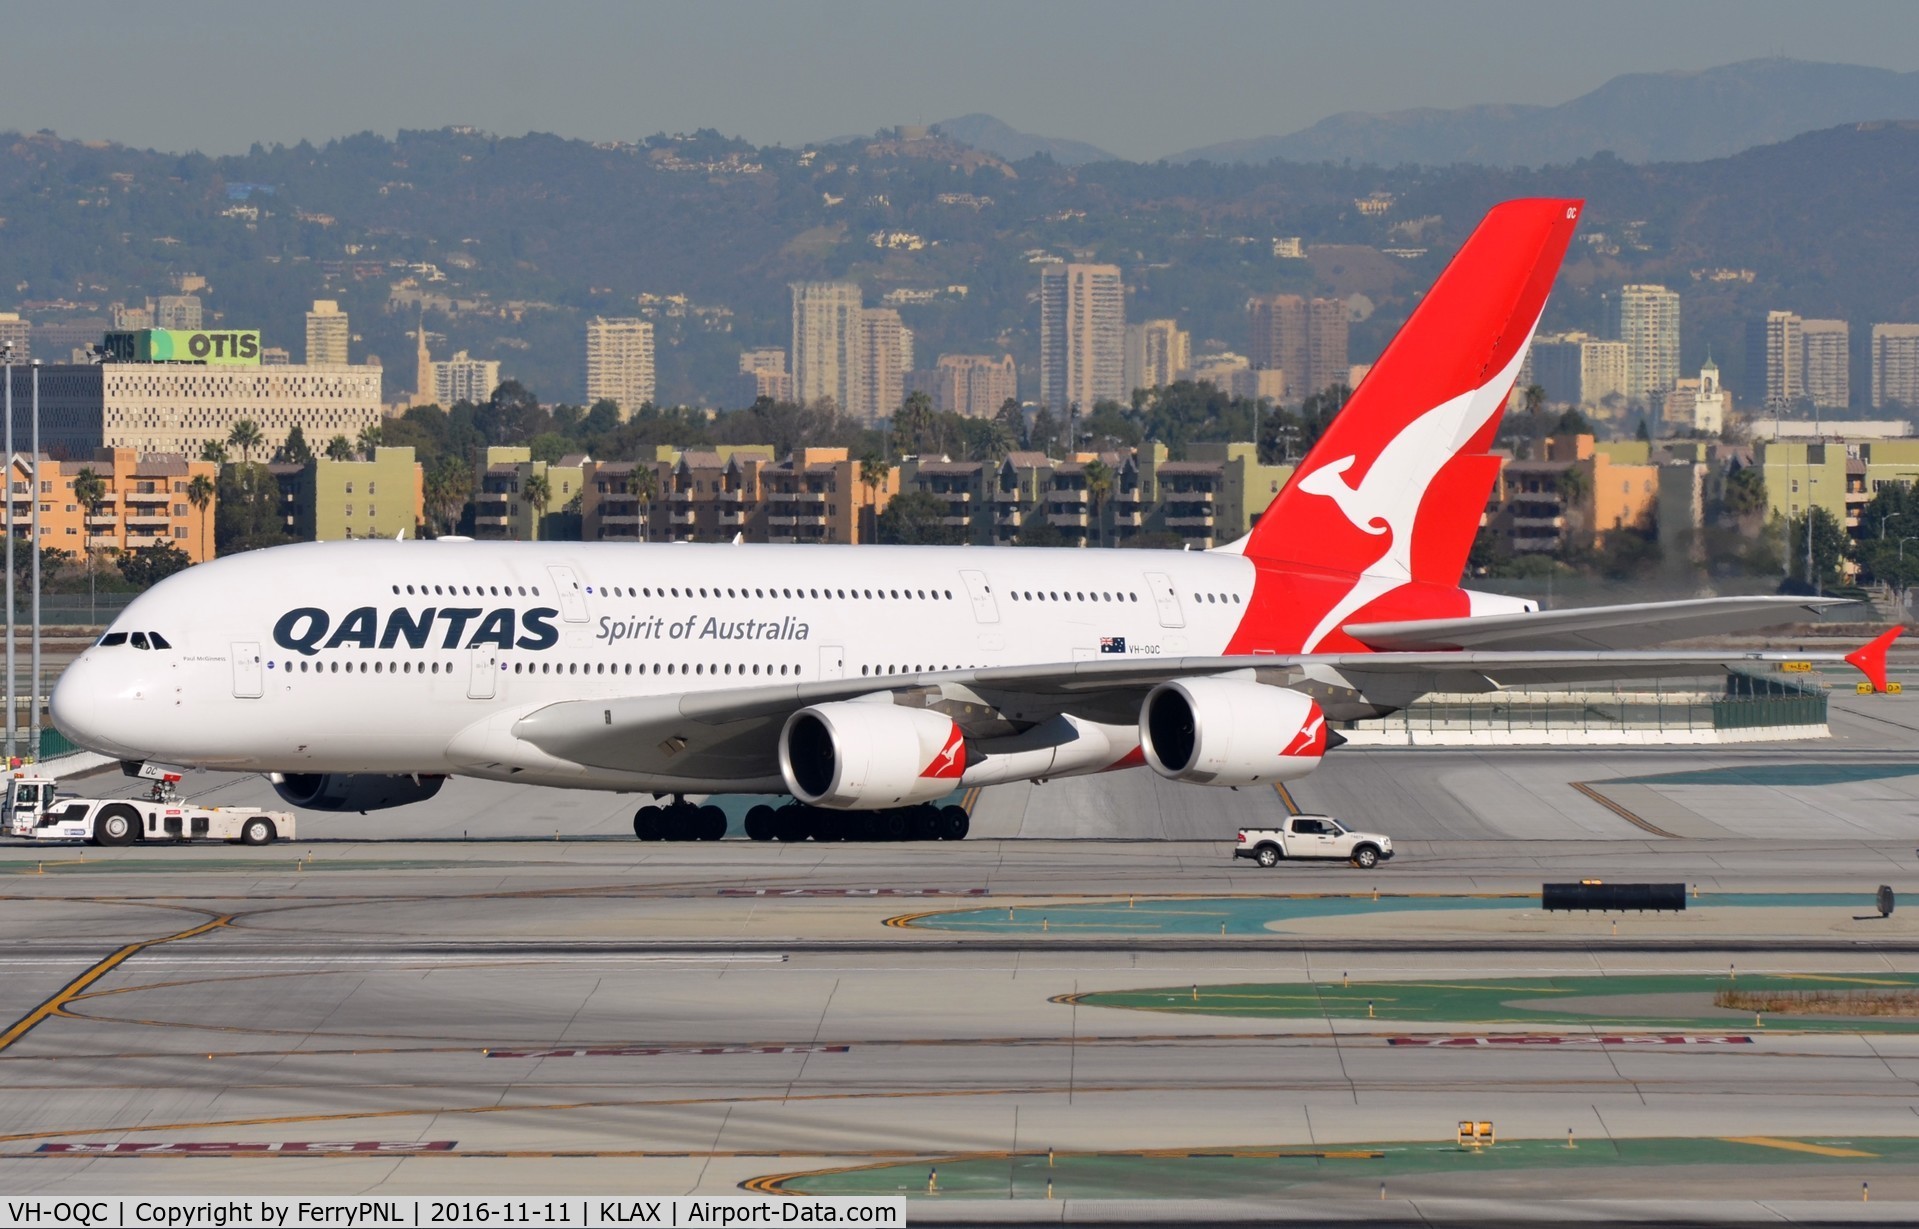 VH-OQC, 2008 Airbus A380-842 C/N 022, Qantas A388 under tow.